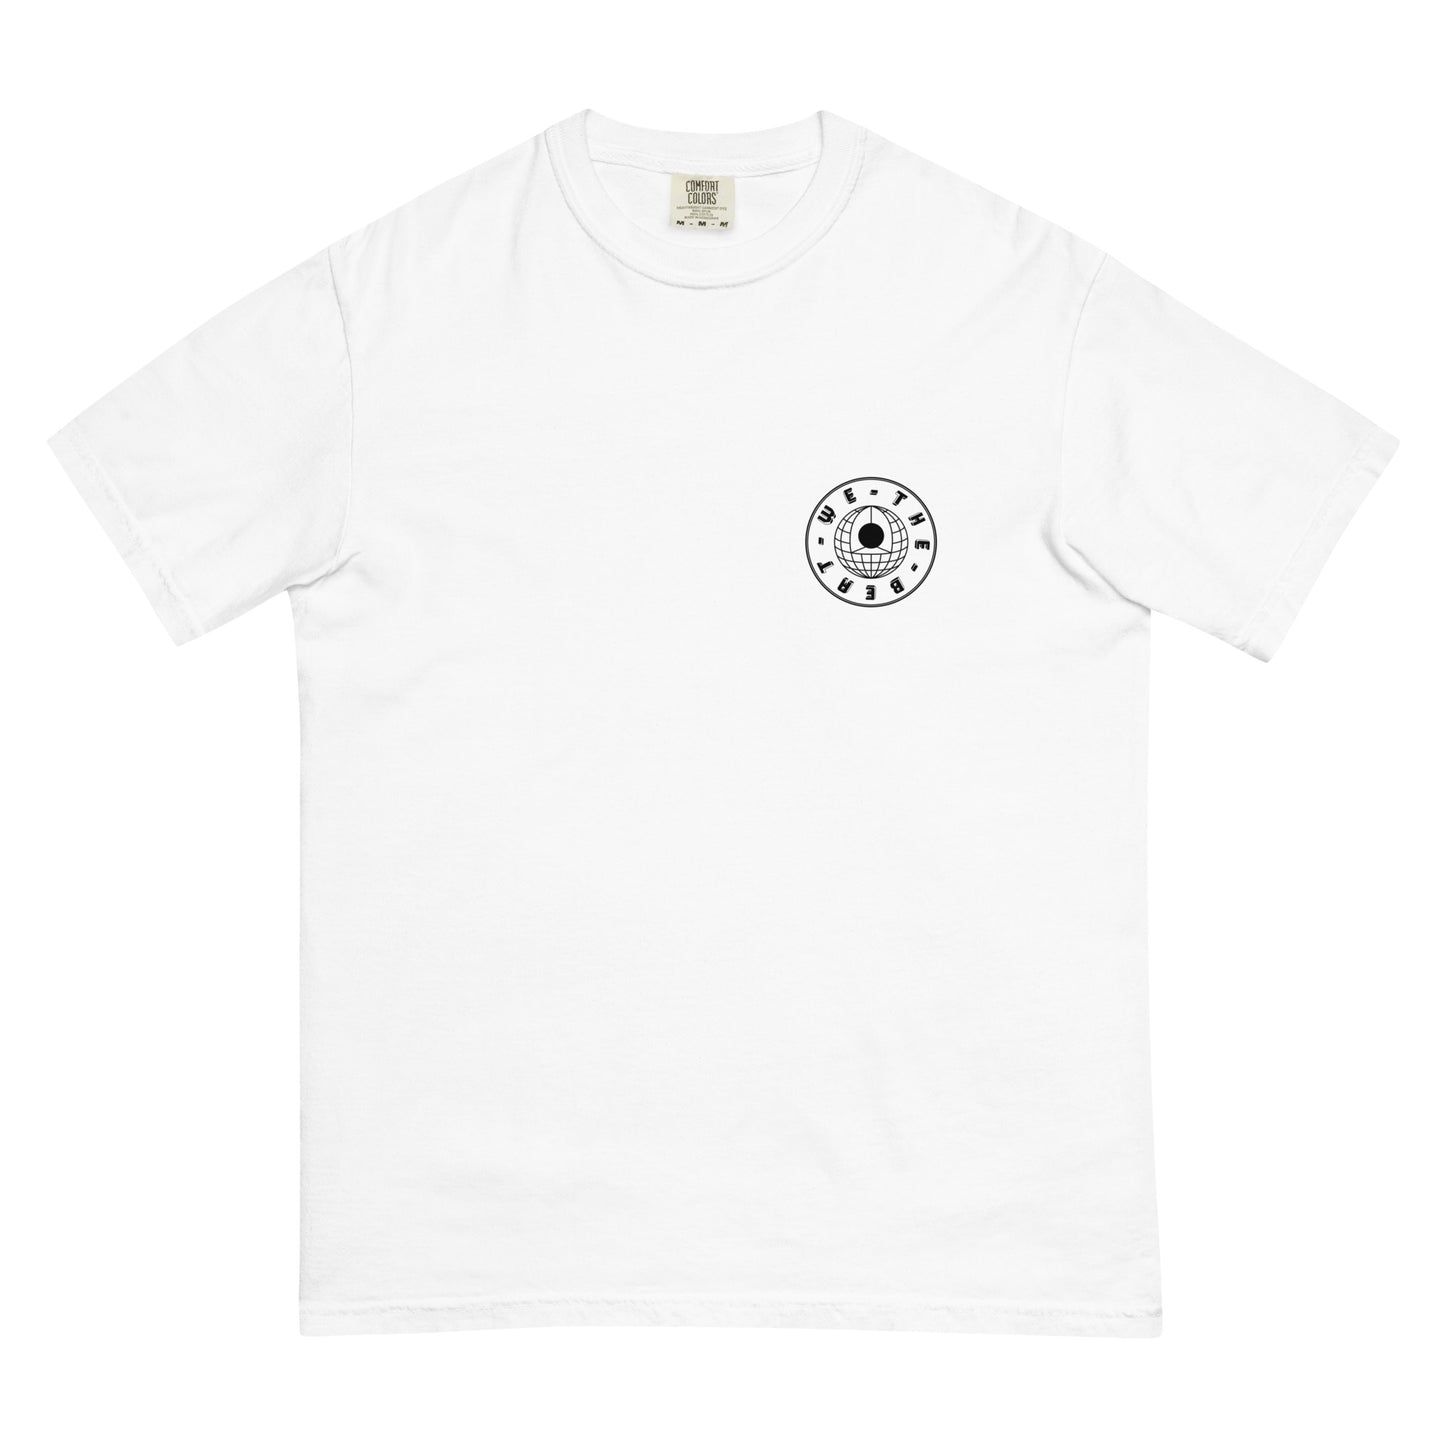 EIGTTB T-Shirt - White